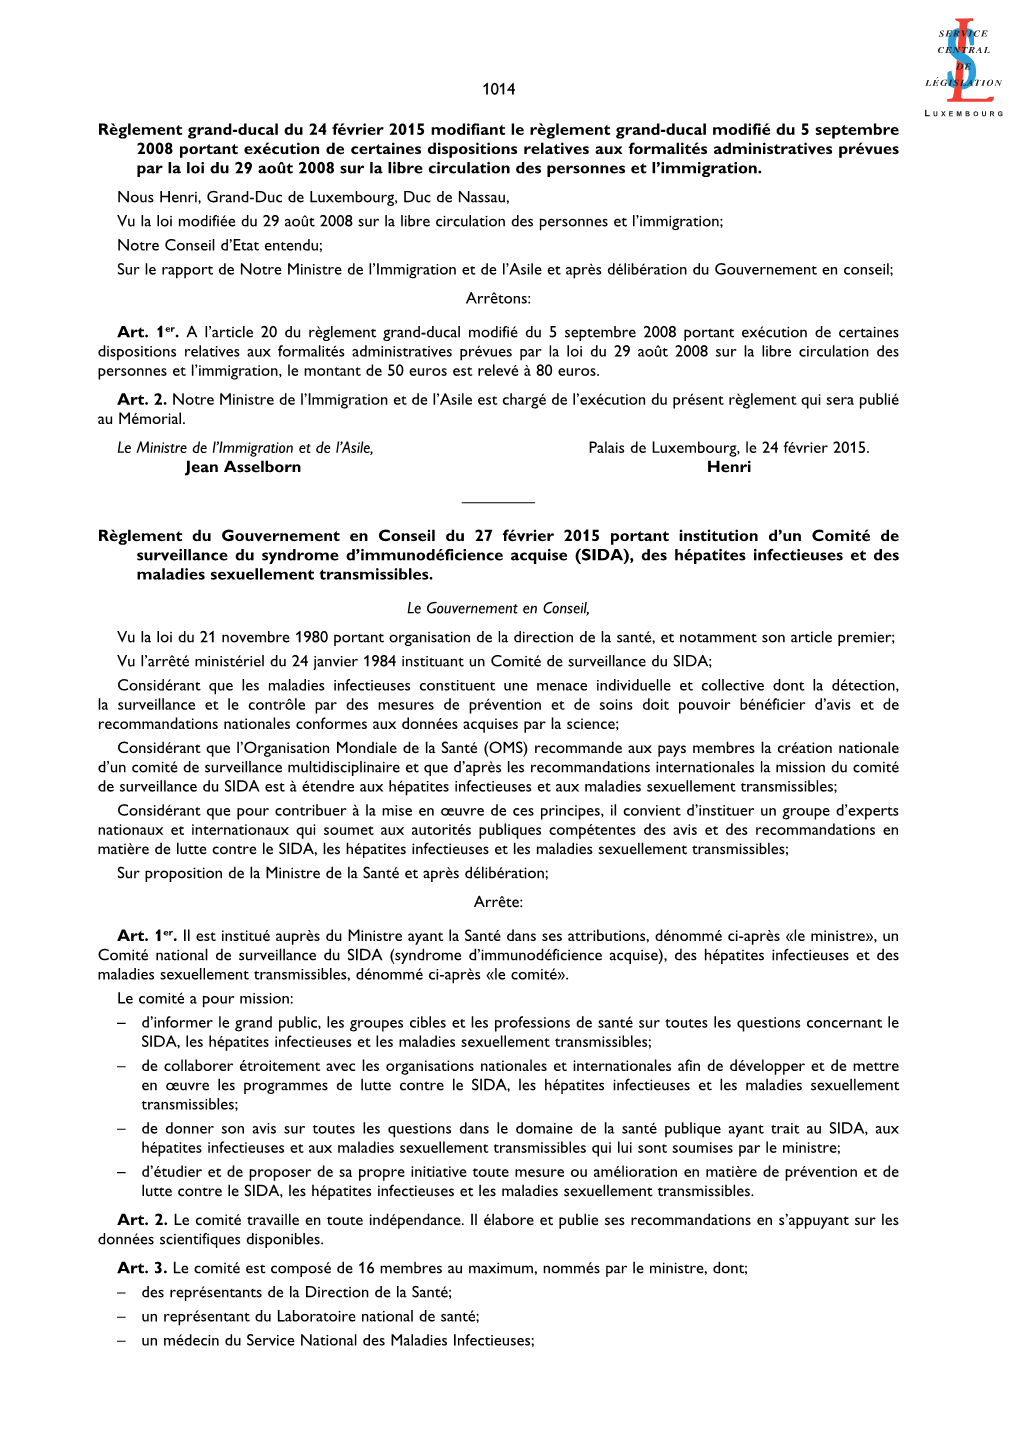 Règlement Grand-Ducal Du 24 Février 2015 Modifiant Le Règlement Grand